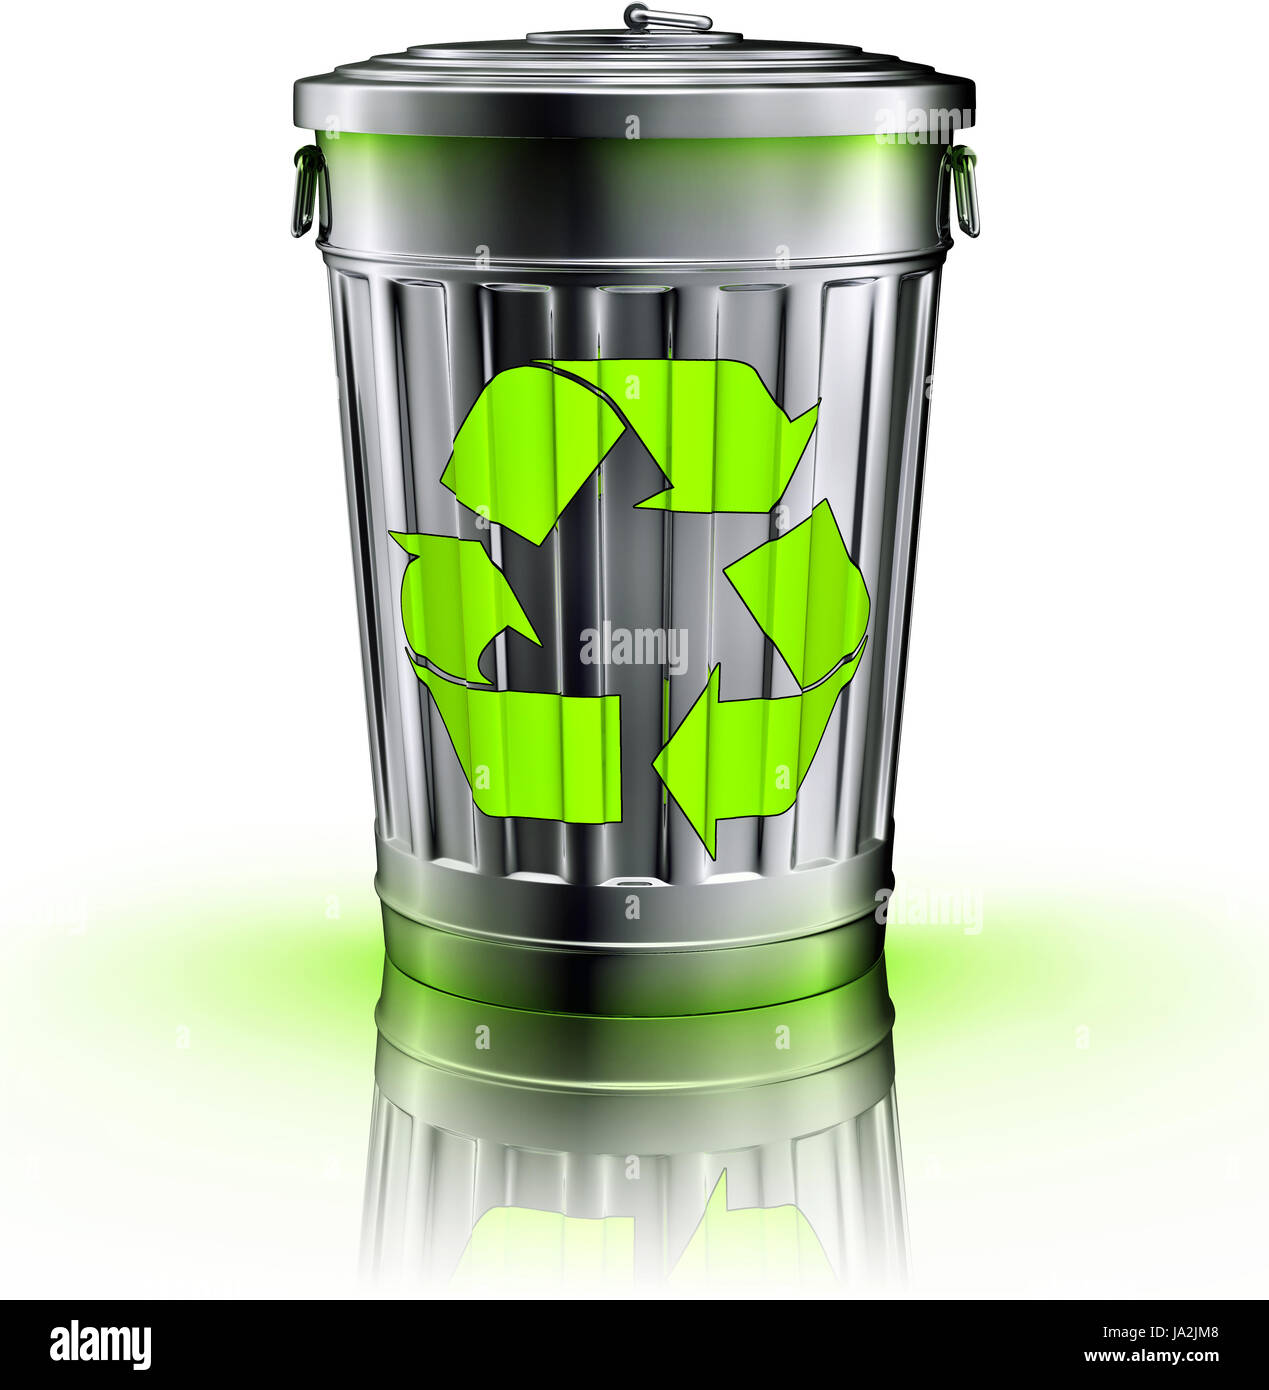 Papierkorb, Mülleimer, Umweltschutz, nachhaltige, ökologische, wieder  verwendbar Stockfotografie - Alamy